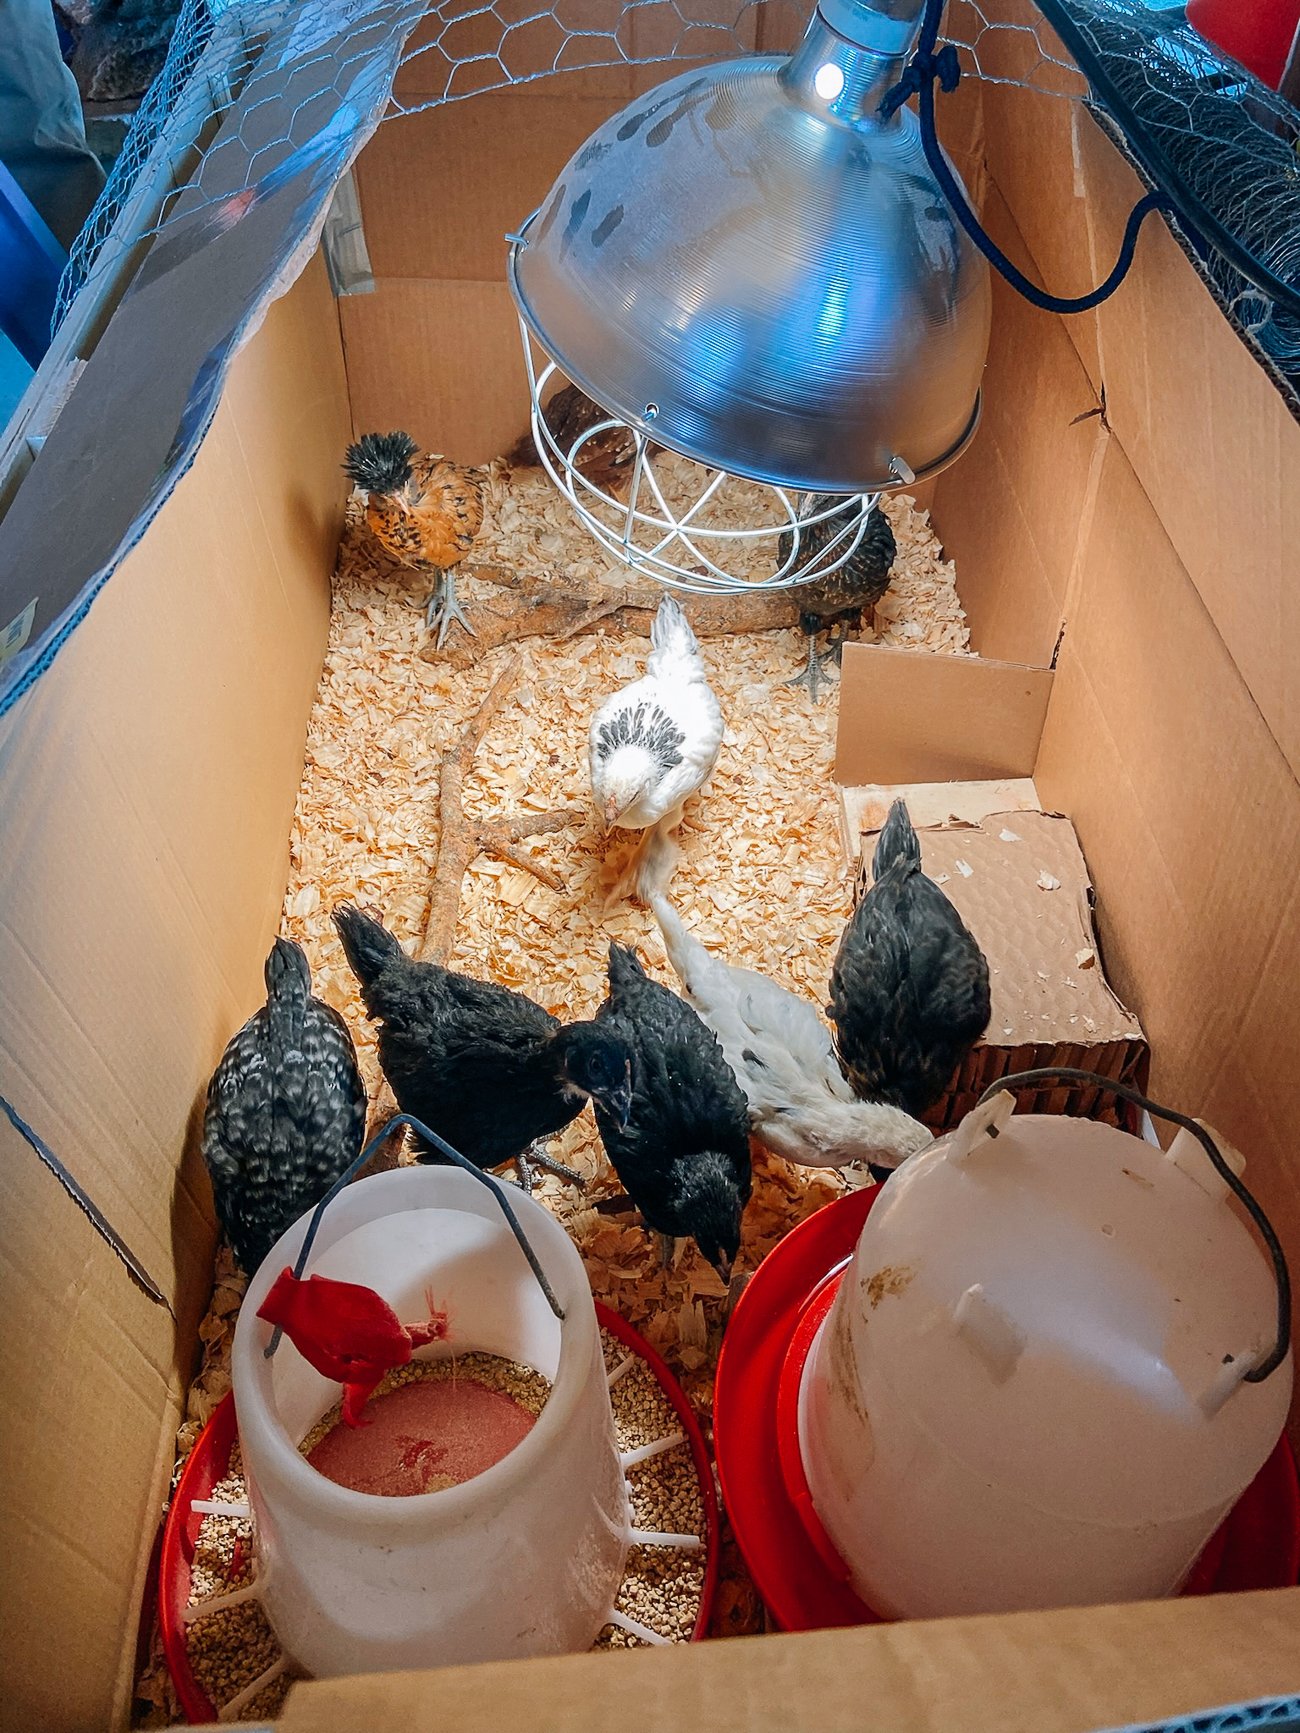 large brooder set-up for older chicks